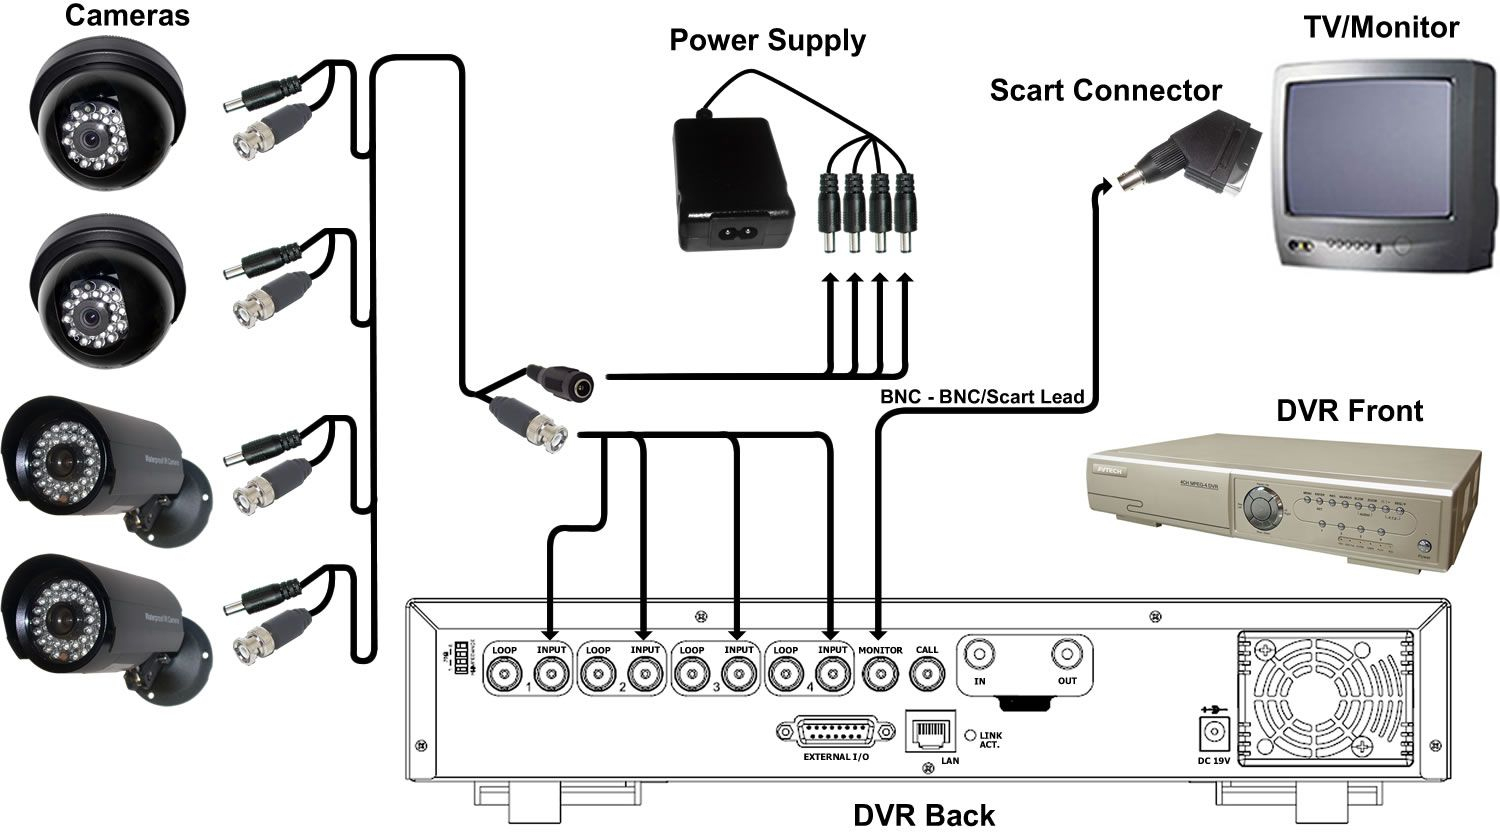 Cctv Cameras Wiring Diagram - Wiring Diagrams Hubs - Cctv Camera Wiring Diagram